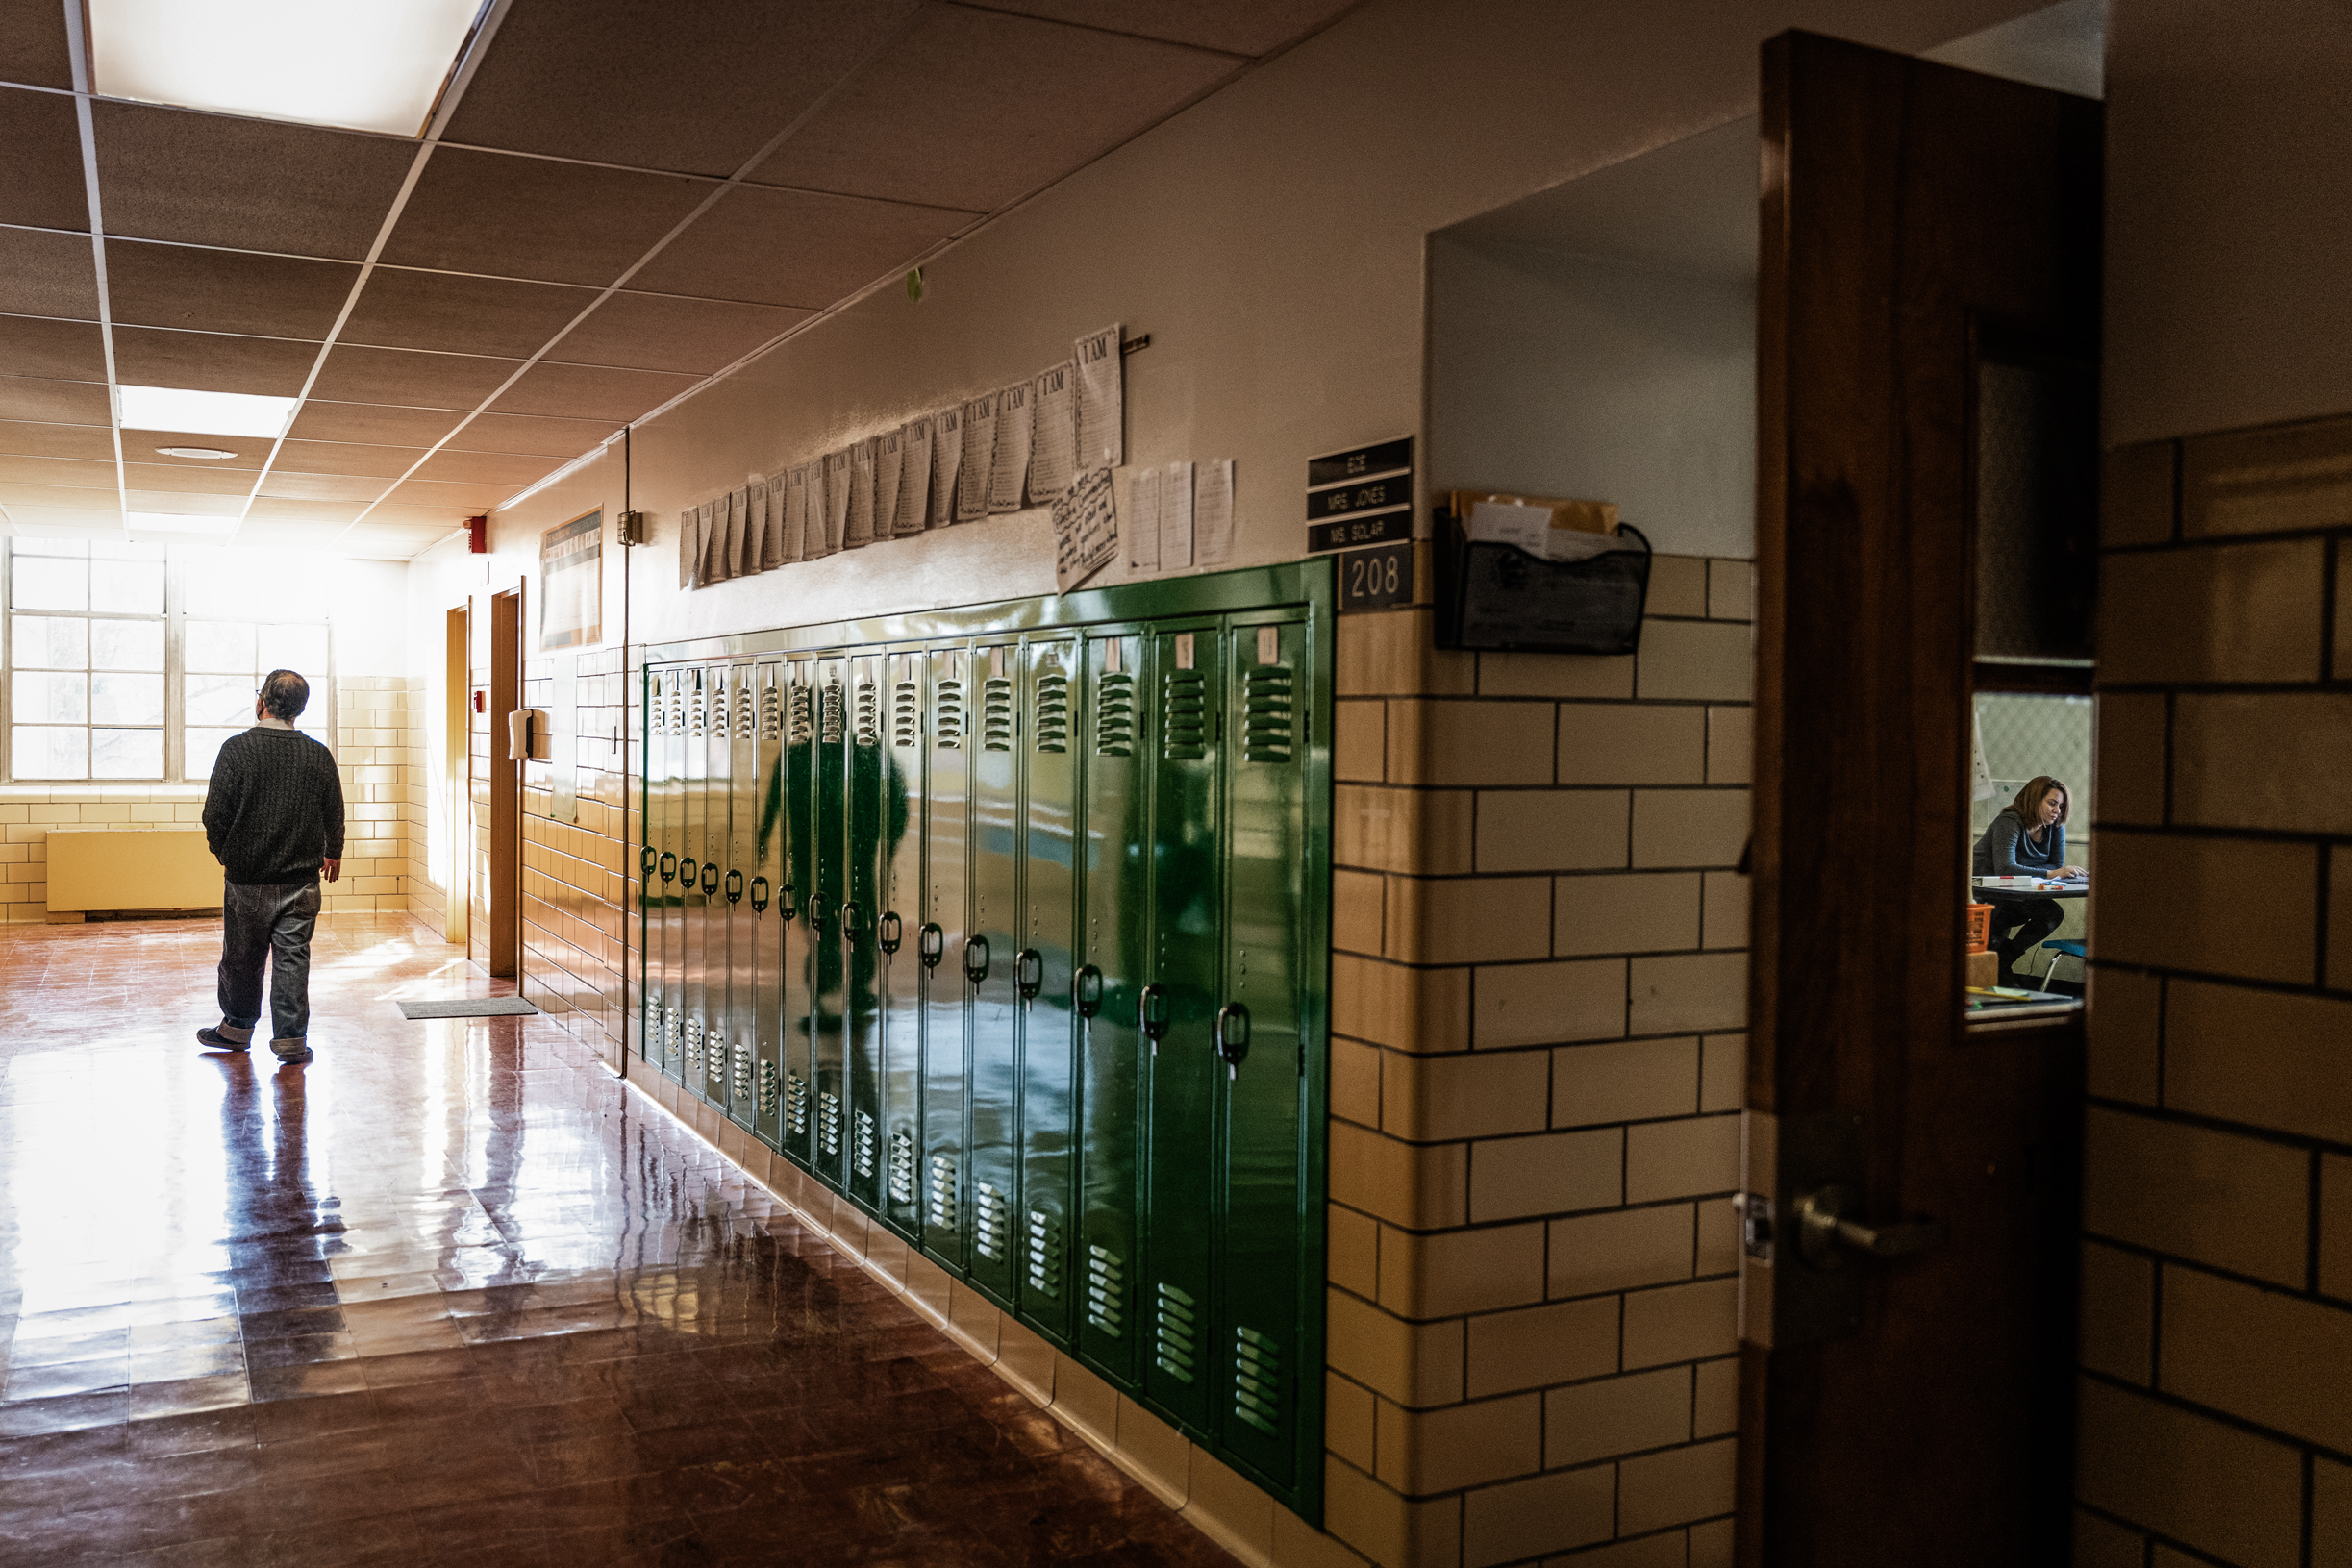 Một giáo viên bước xuống hành lang trống trong khi một giáo viên khác dạy trực tuyến (phải) tại Trường tiểu học Hazelwood ở Louisville, Kentucky, vào ngày 11/01/2022. (Ảnh: Jon Cherry/Getty Images)